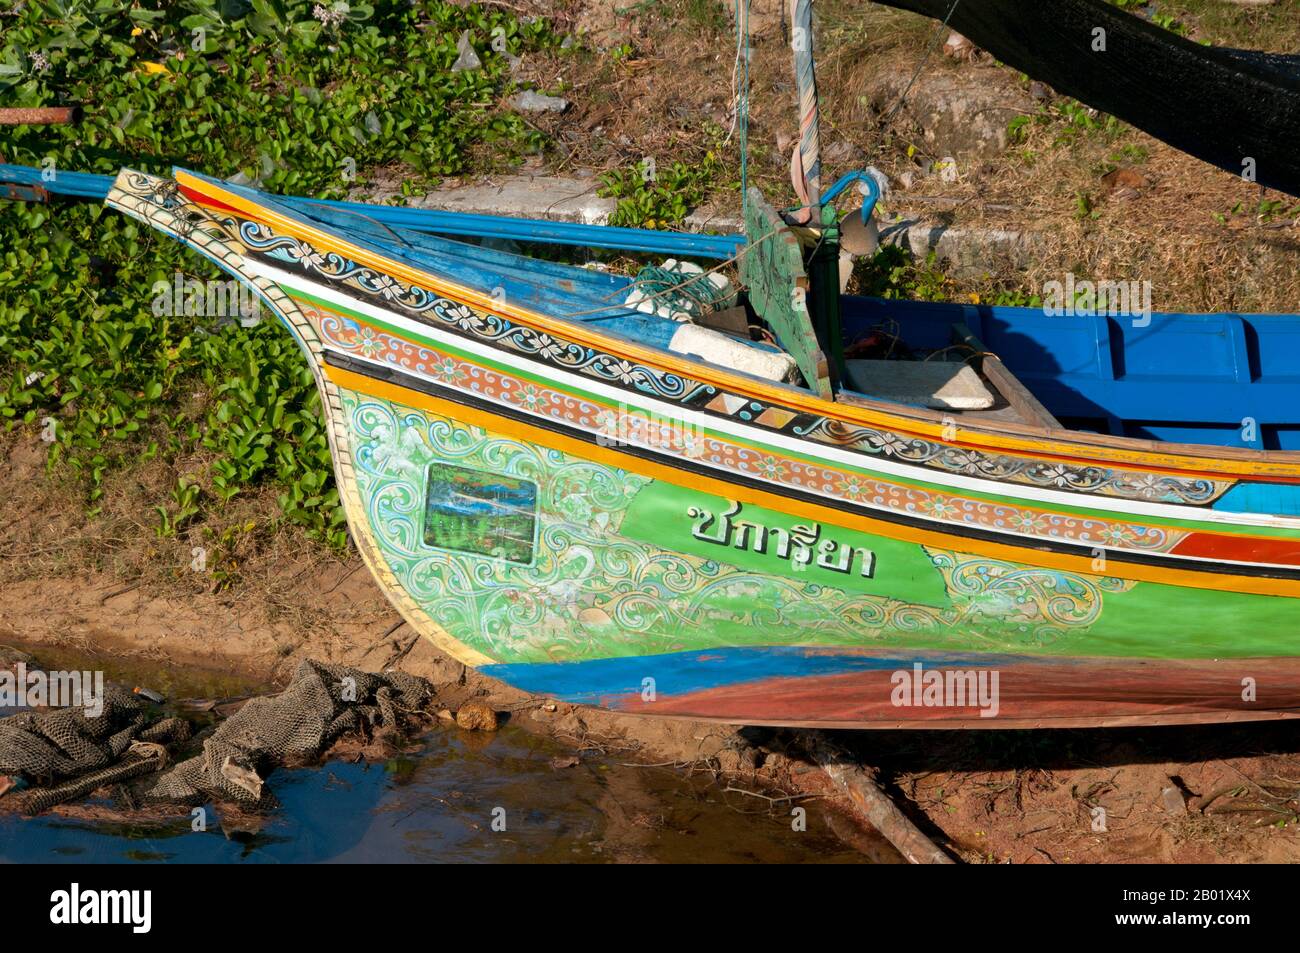 Le long principalement de la côte est de la Thaïlande péninsulaire, de Ko Samui vers le sud, des bateaux de pêche colorés et peints ont été construits et décorés par des pêcheurs musulmans depuis des centaines d'années. Les meilleurs exemples de cette industrie en déclin sont ceux du quartier Saiburi, province de Pattani. À l'origine des voiliers, les korlae sont désormais équipés de moteurs de pêcheurs locaux. Parmi les personnages communément représentés sur les motifs superbement détaillés de la coque sont le lion singha, l'oiseau corné gagasura, le serpent de mer payanak, et l'oiseau garuda qui est à la fois le symbole du Royaume thaïlandais et le mythique Banque D'Images